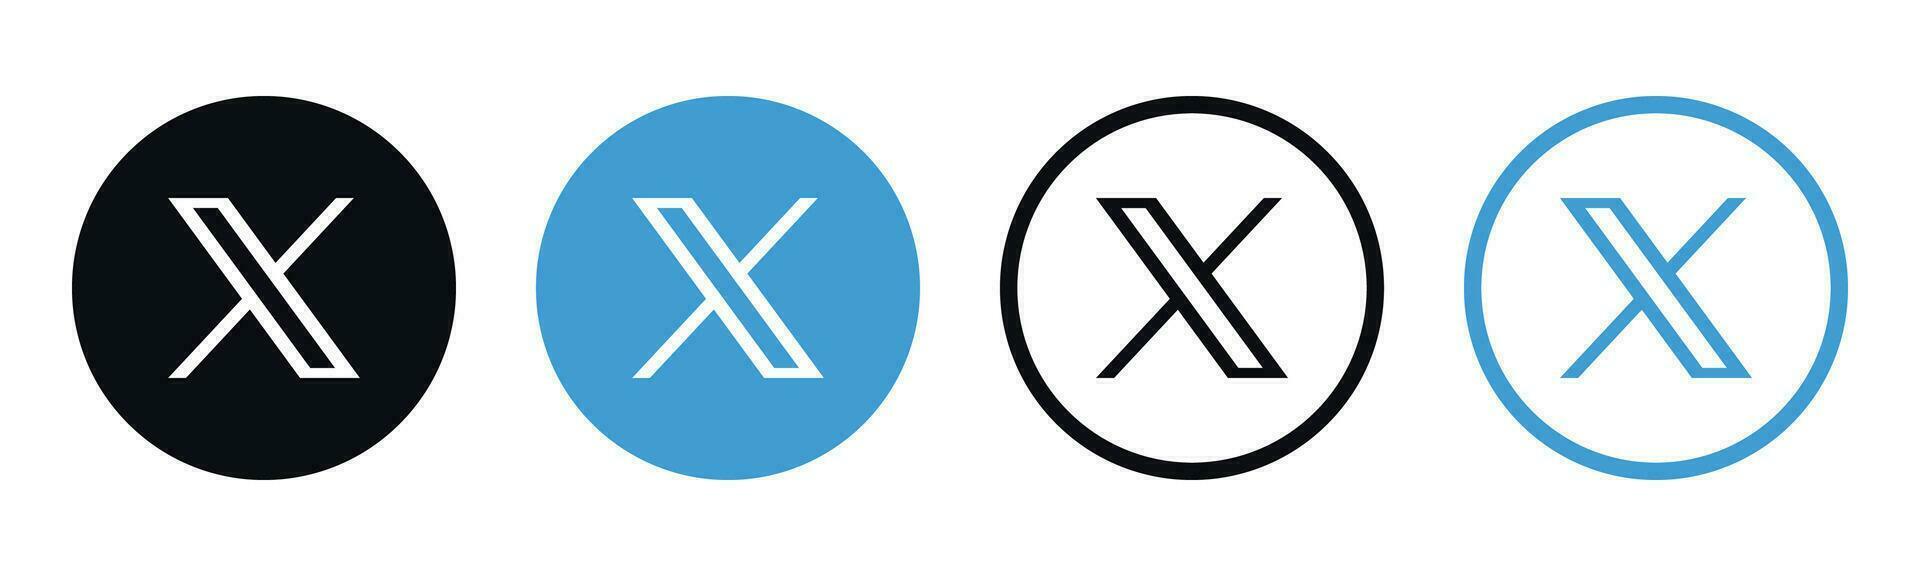 x Novo Twitter social meios de comunicação marca logotipo vetor